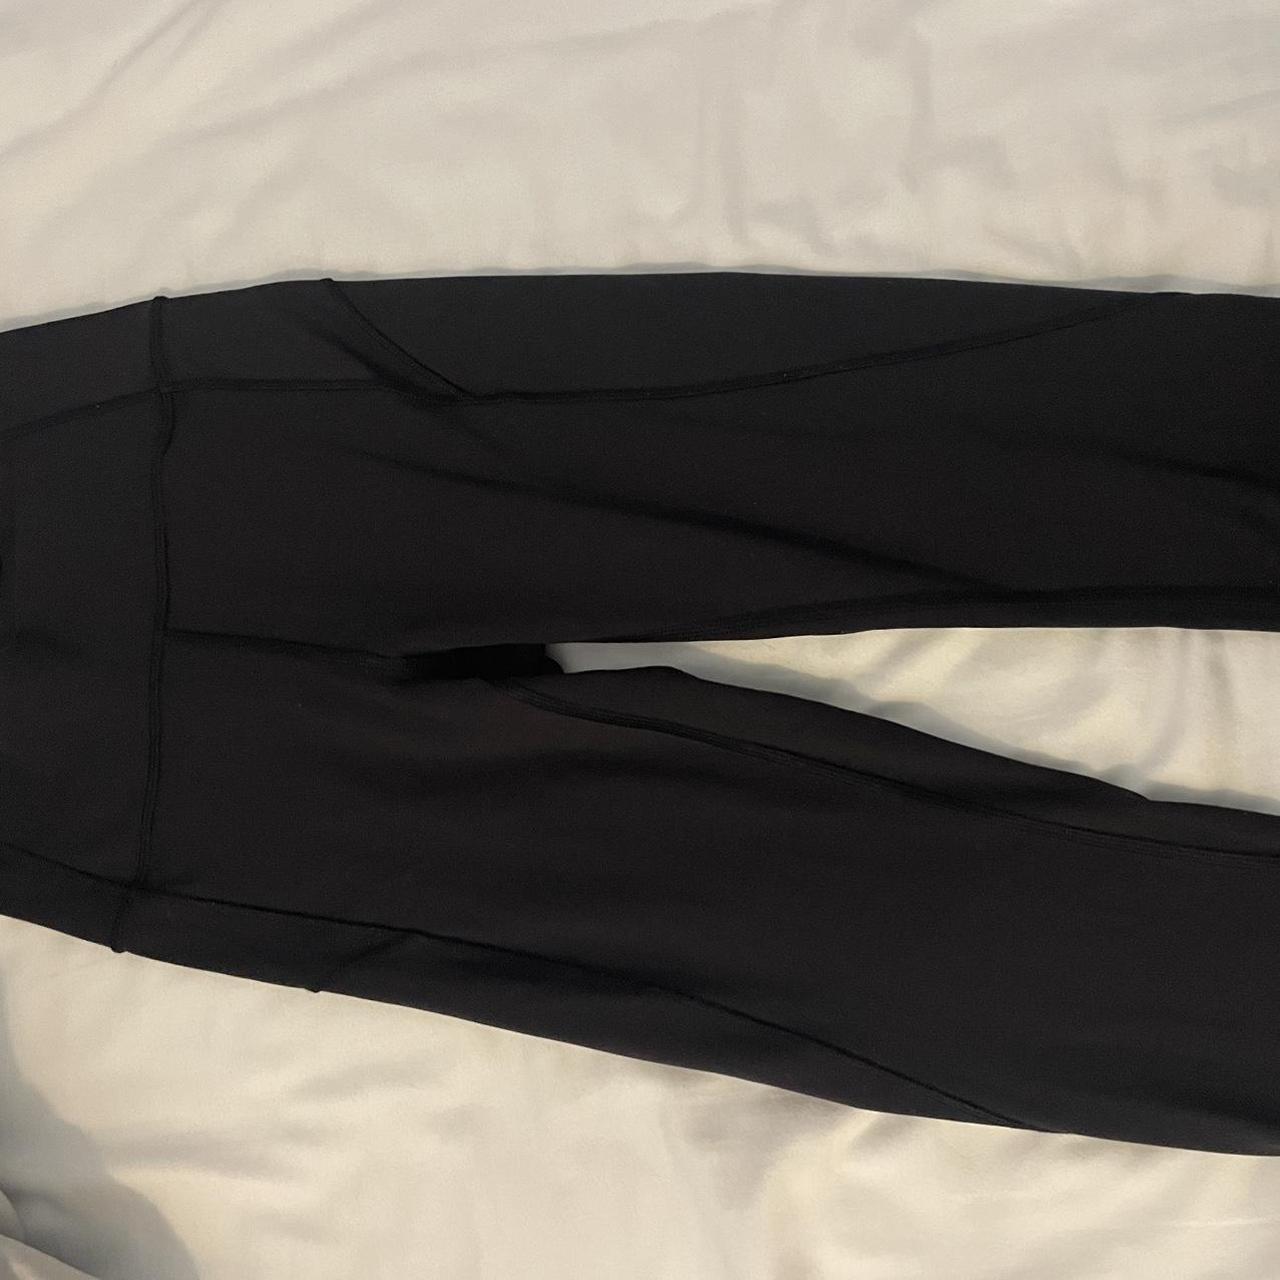 LULULEMON black leggings with pockets - 25” -... - Depop